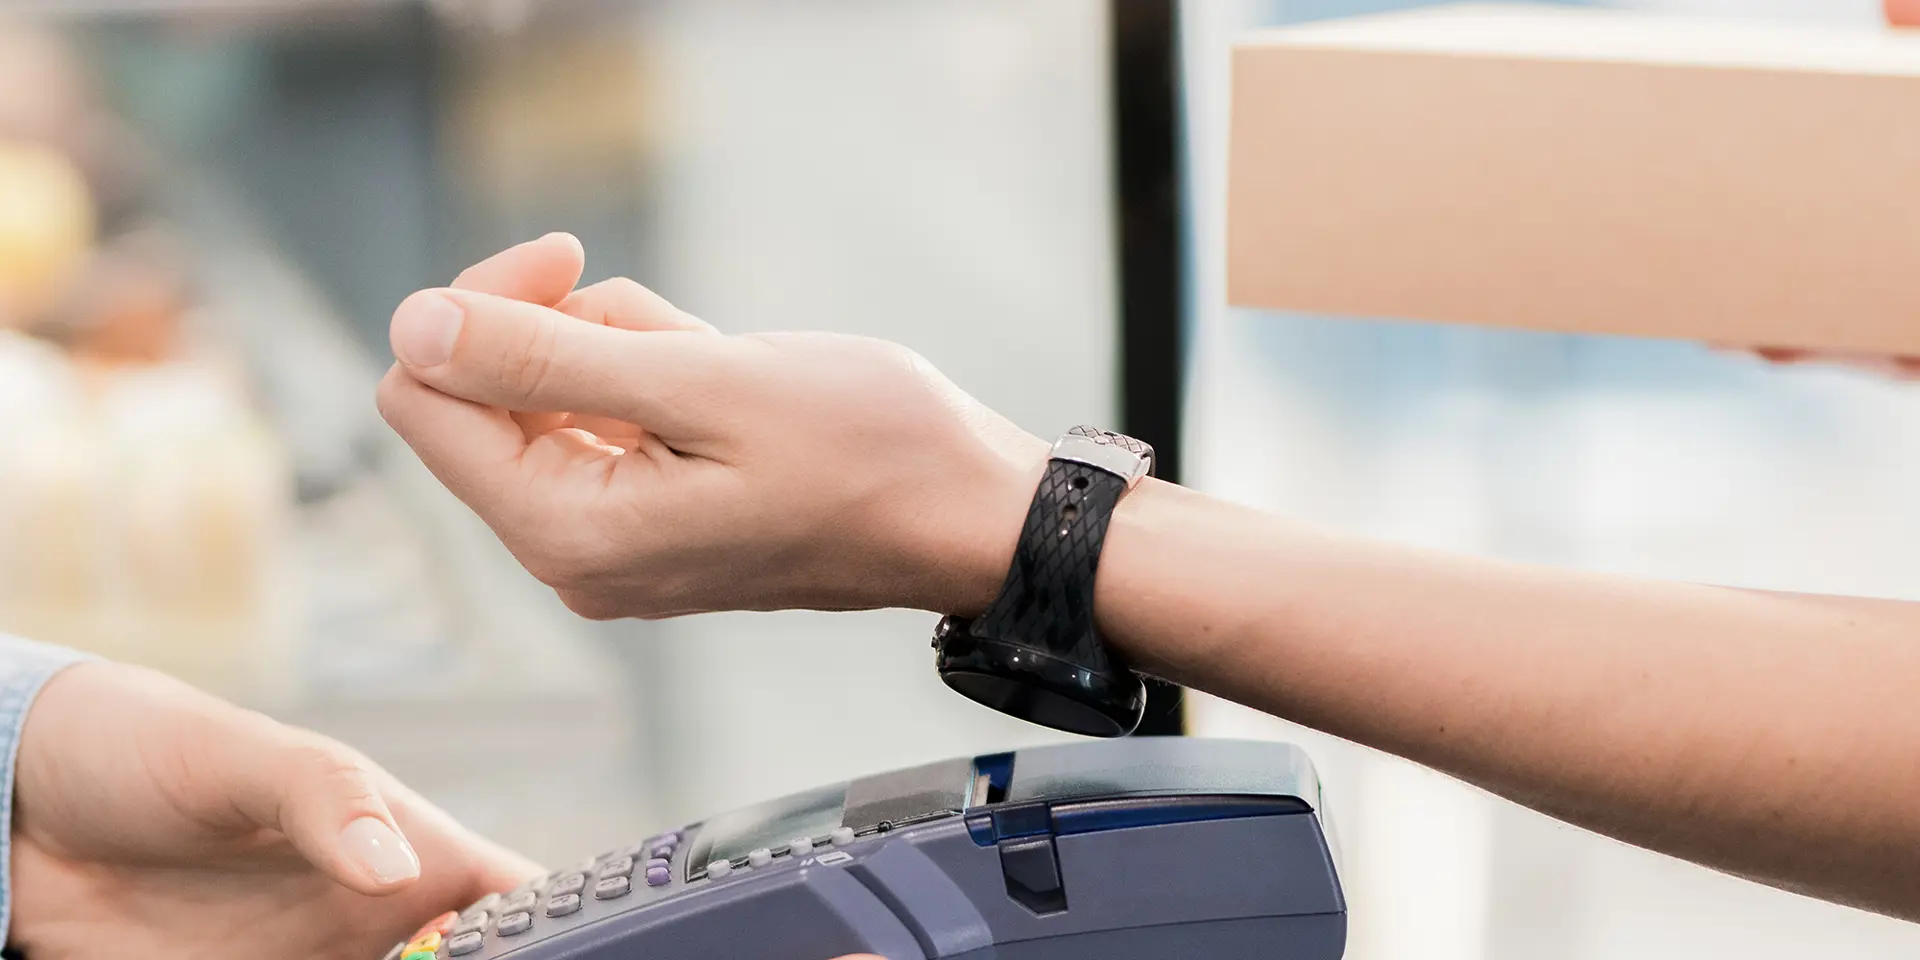 Personer bruger sit smartwatch til at betale ved en kasseekspedient med Fitpay, 